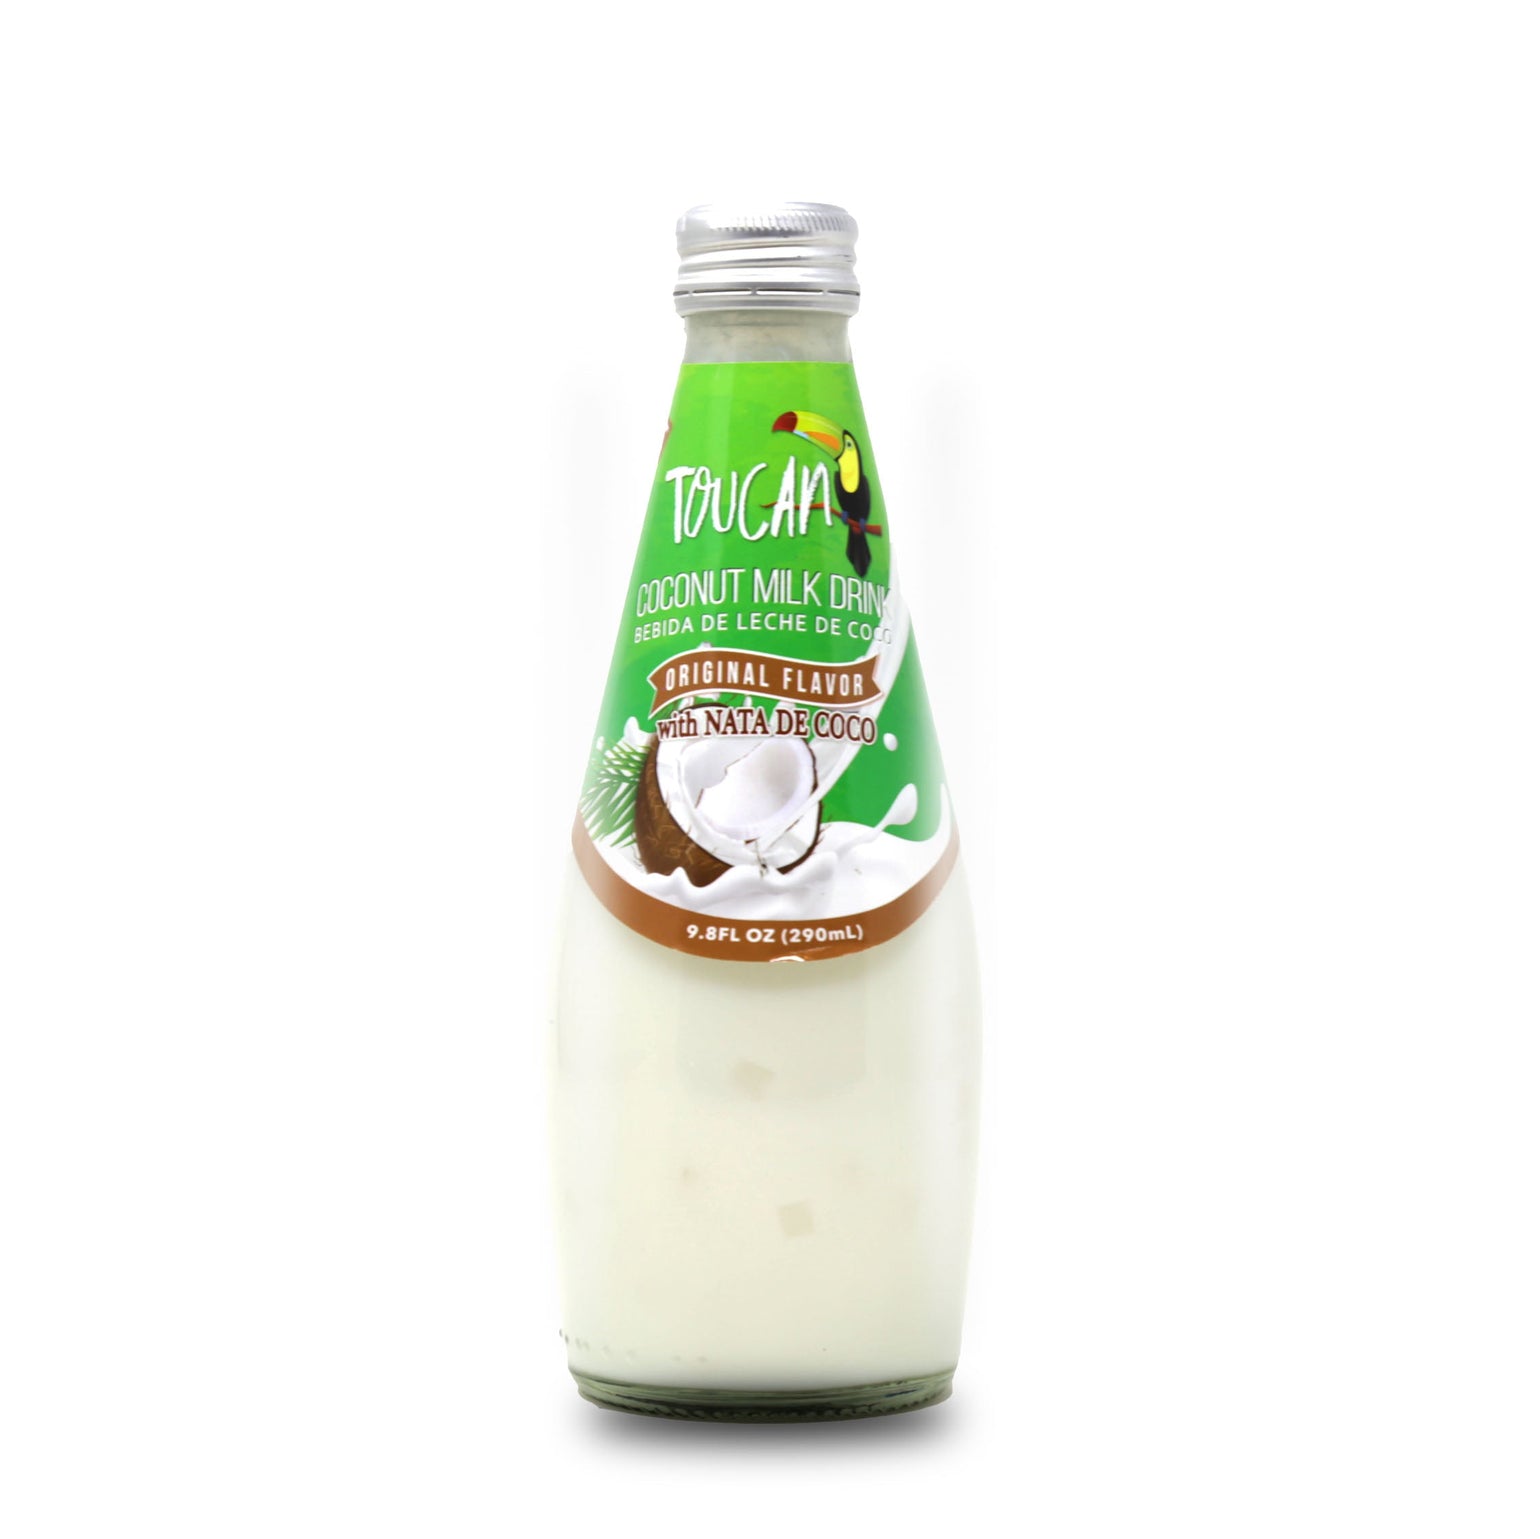 Toucan Coconut Milk Drink Original Flavor W/ Nata De Coco 9.8 FL Oz (2 ...